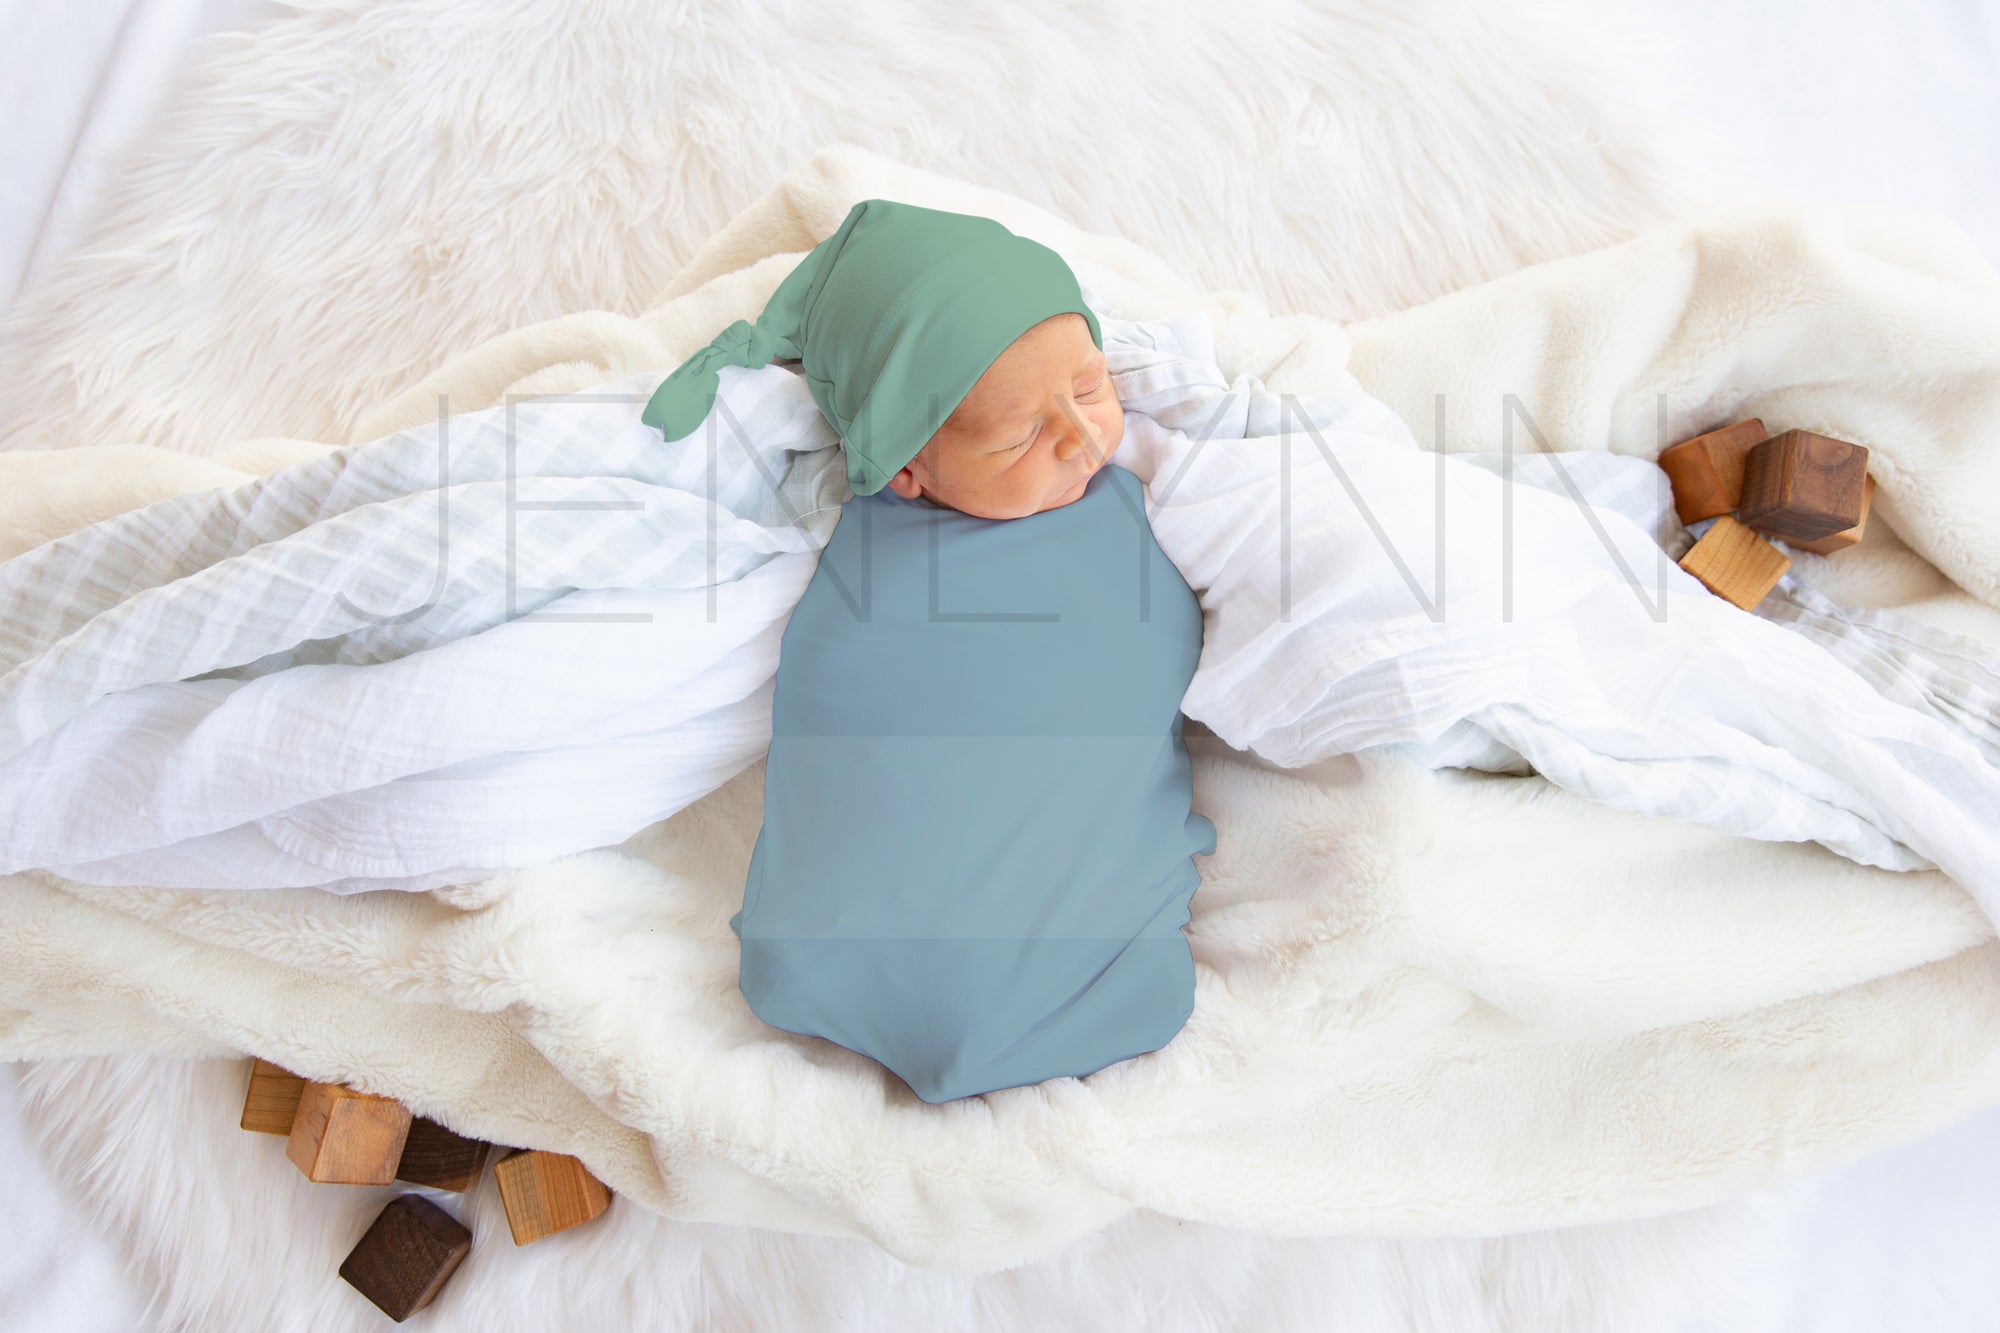 Stretch Jersey Blanket on Baby Boy Mockup #JZ26 PSD